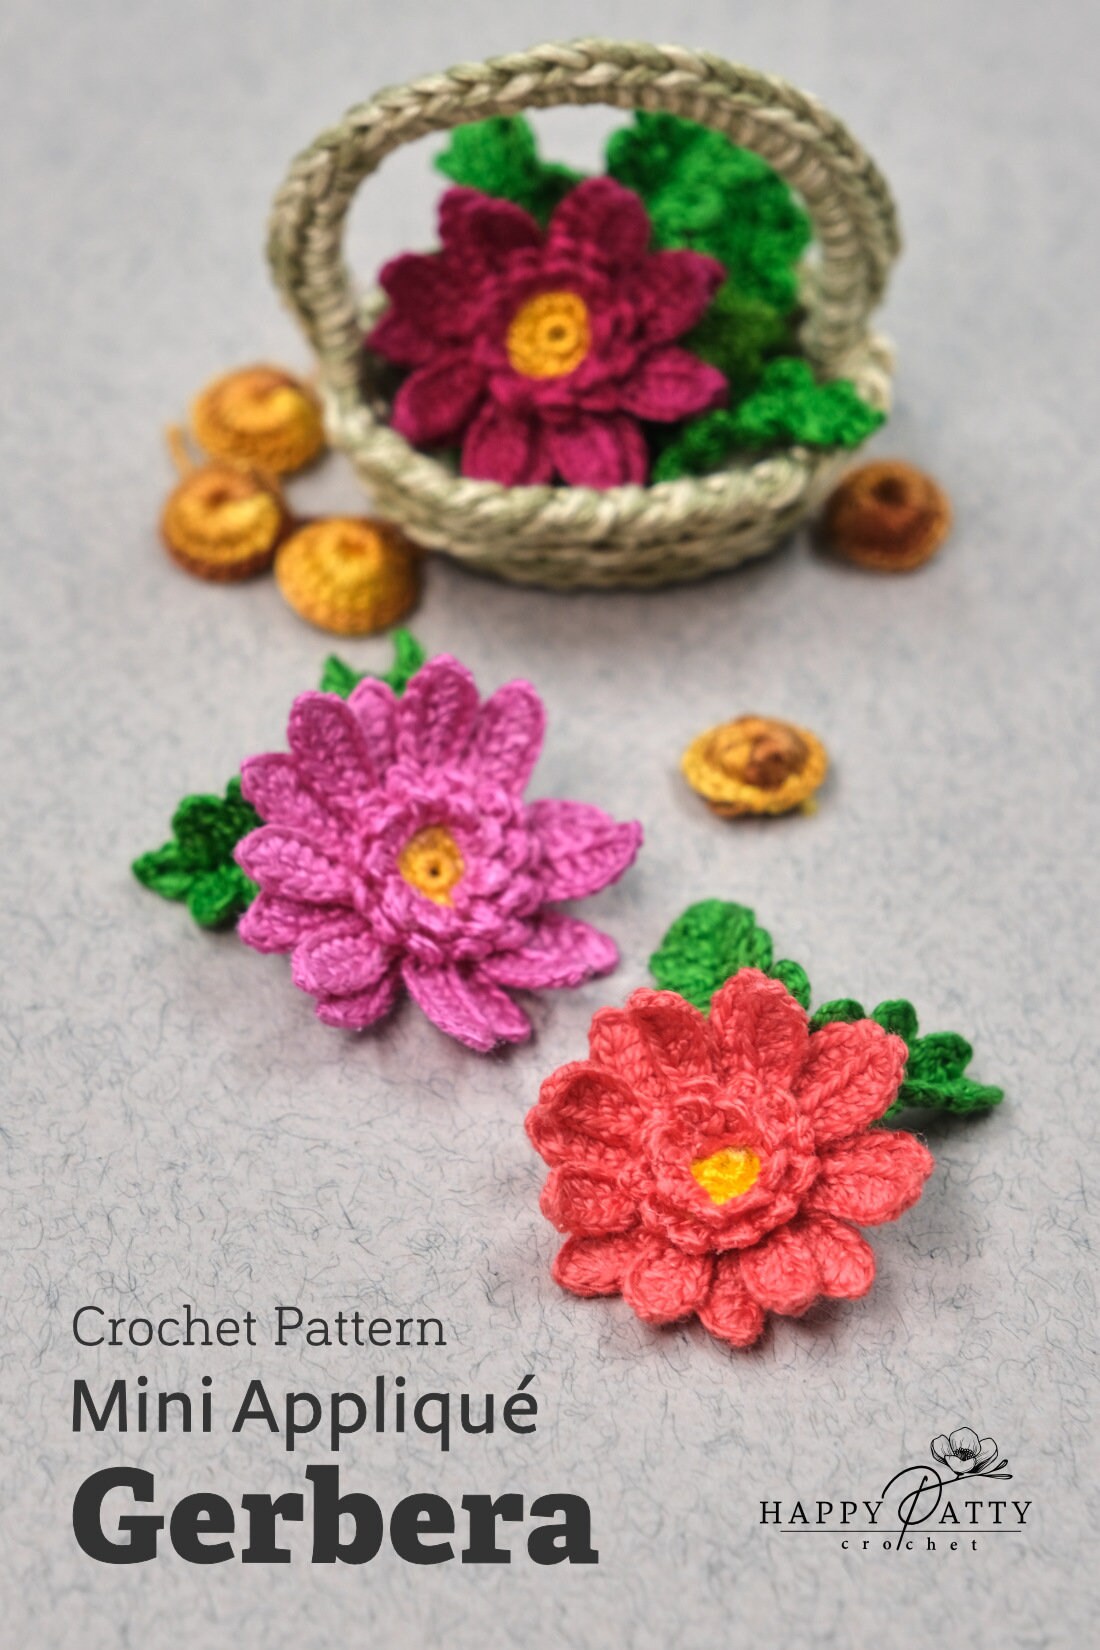 Crochet Mini Gerebra Applique Pattern - Crochet Flower Pattern for a Miniature Gerebra Applique